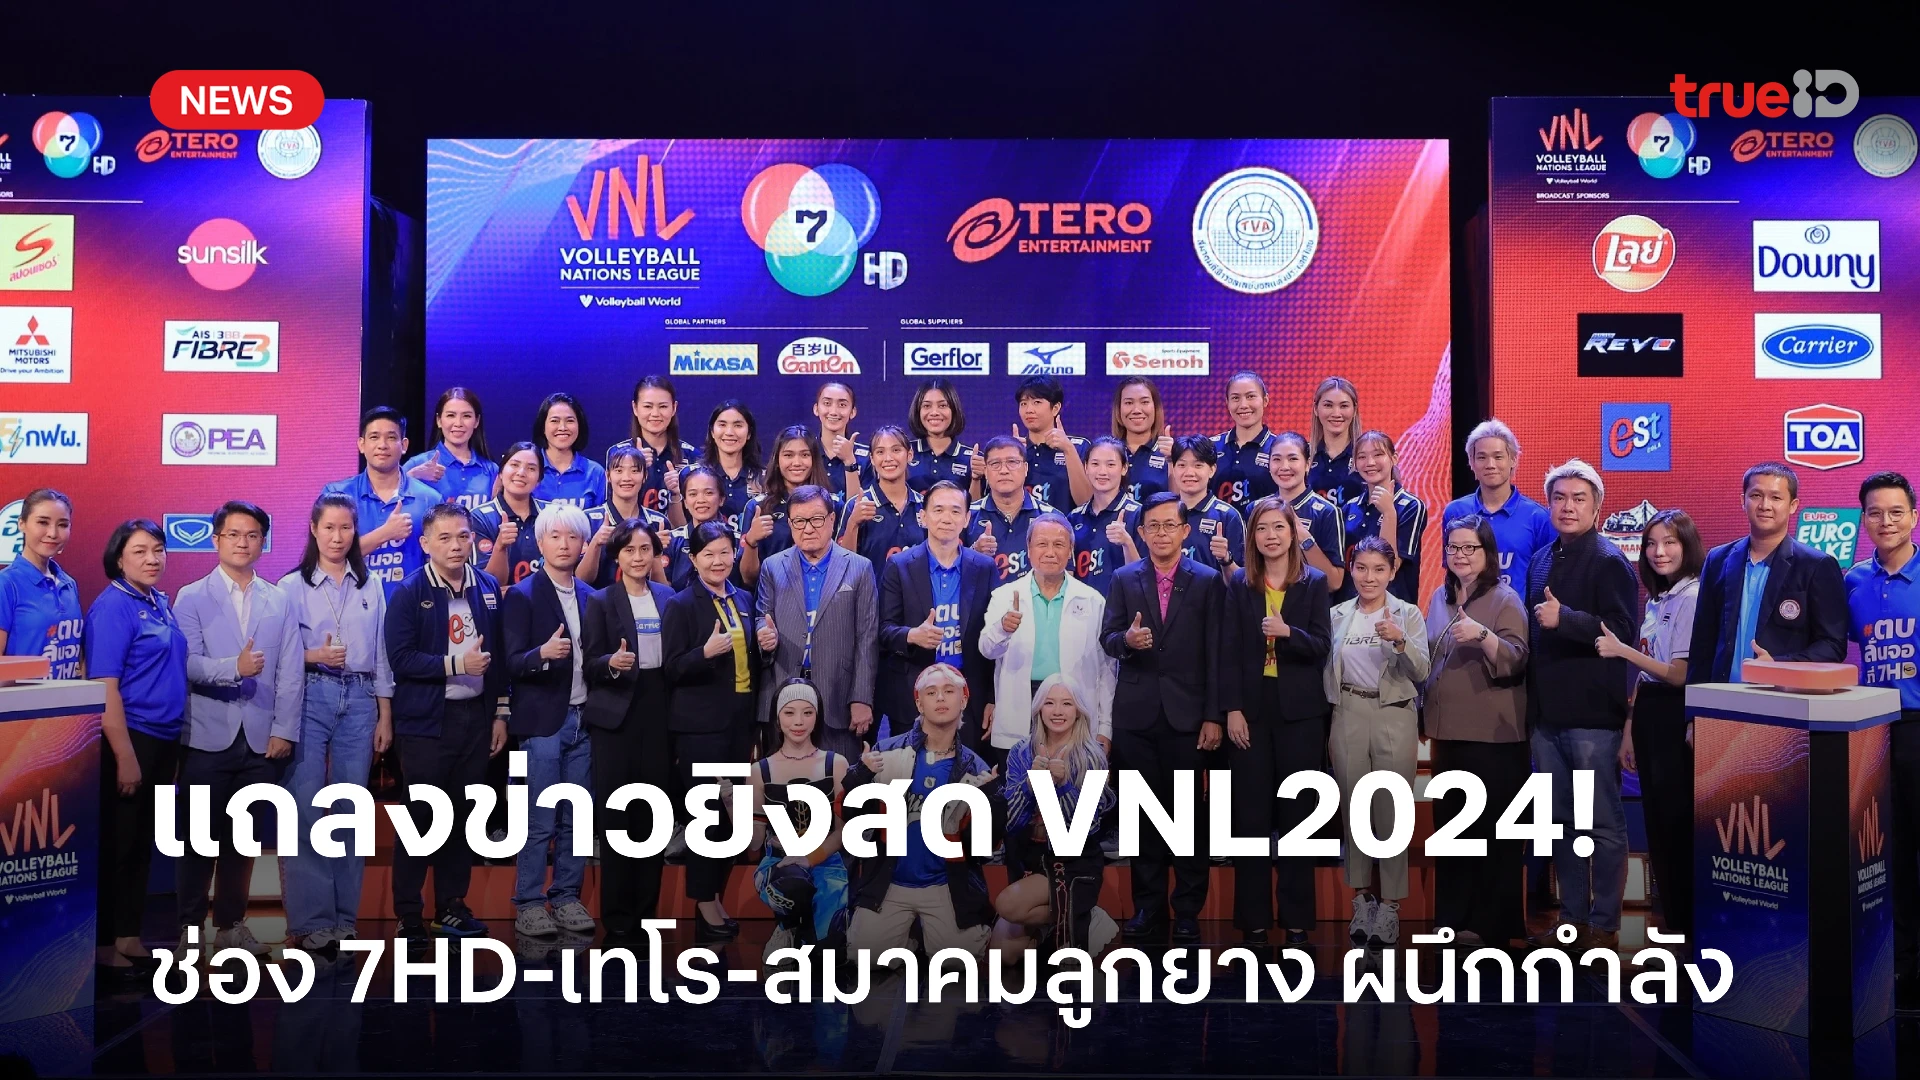 ตบลั่นจอ! ช่อง 7HD-เทโรฯ-สมาคมวอลเลย์บอล แถลงข่าวถ่ายทอดสด VNL 2024